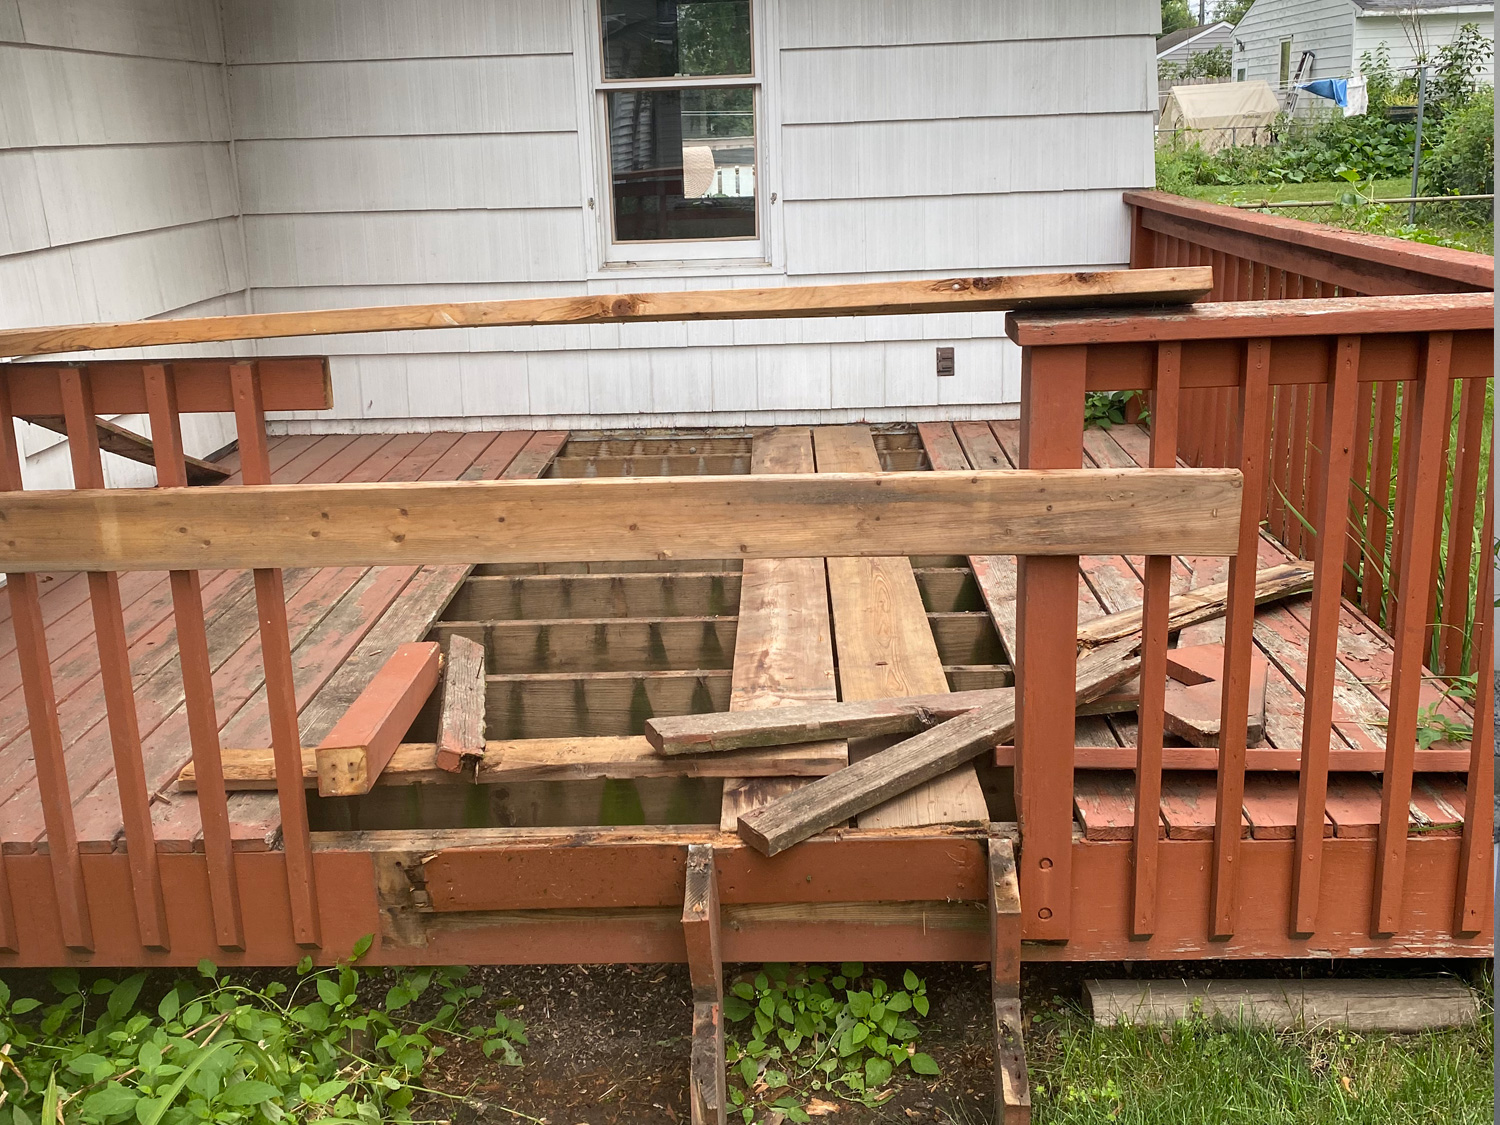 Queen Property Under Construction - Deck Repair